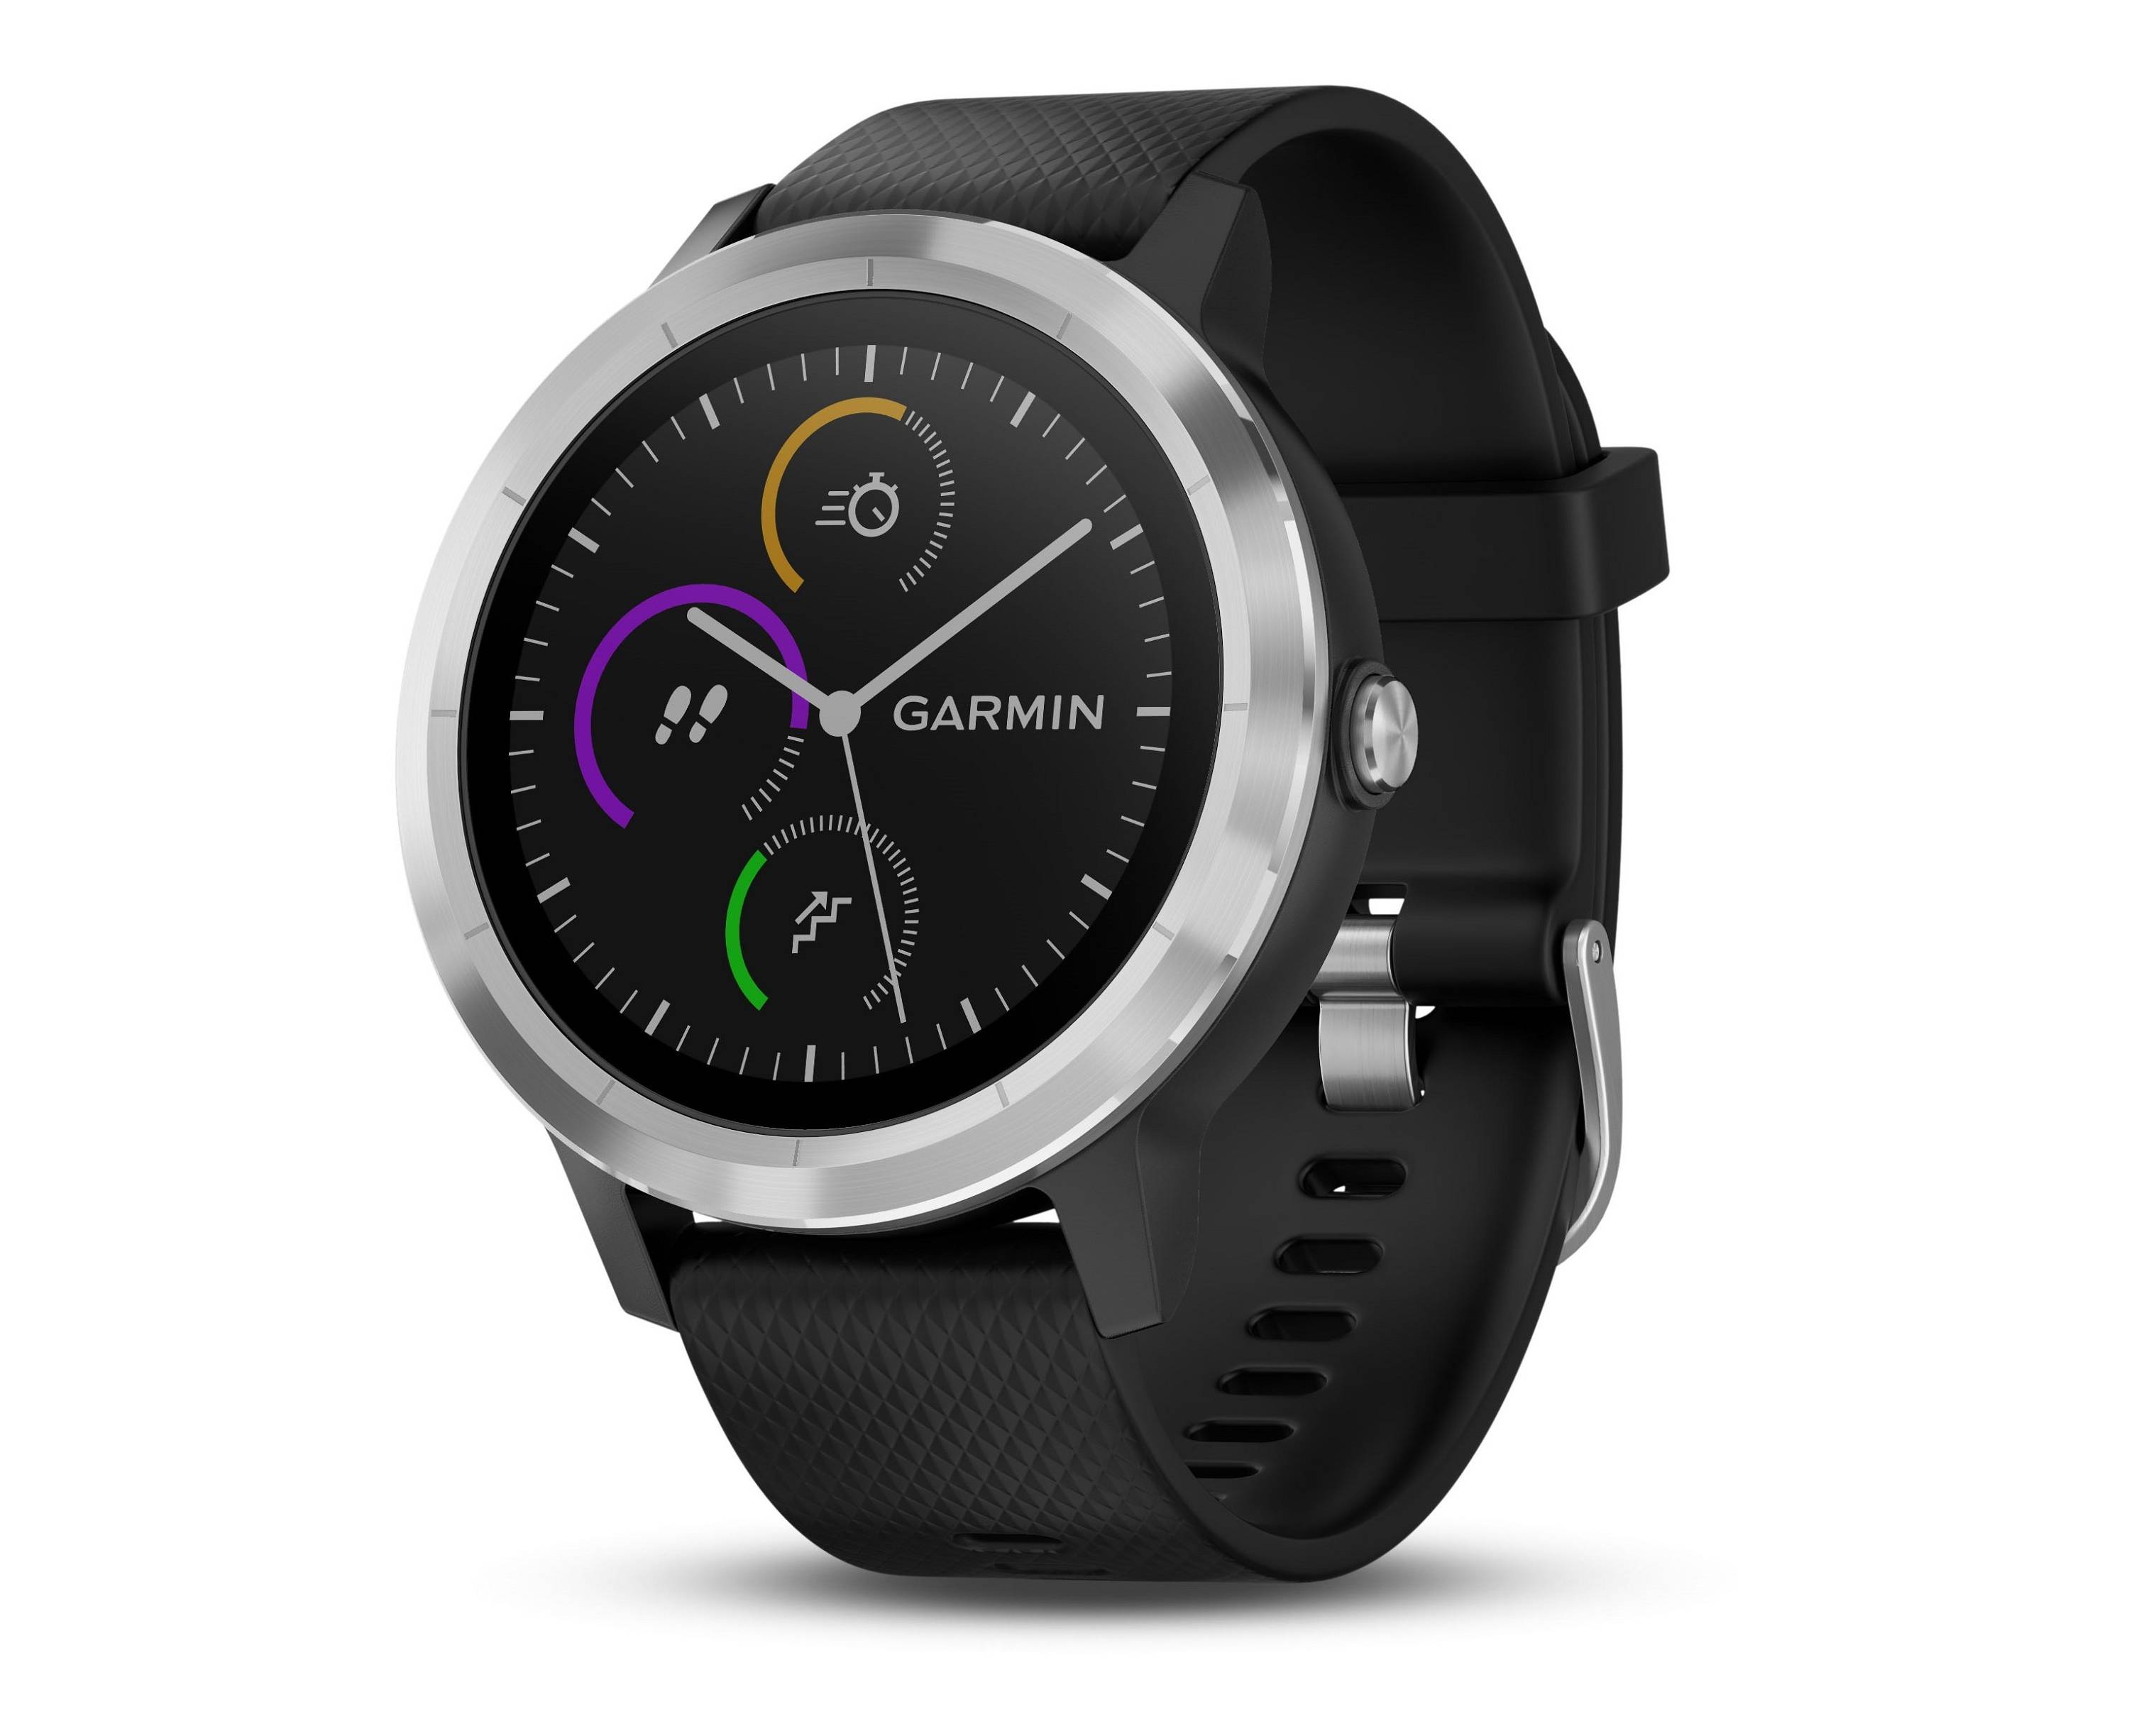 Garmin Vivoactive 3 smartwatch for $200